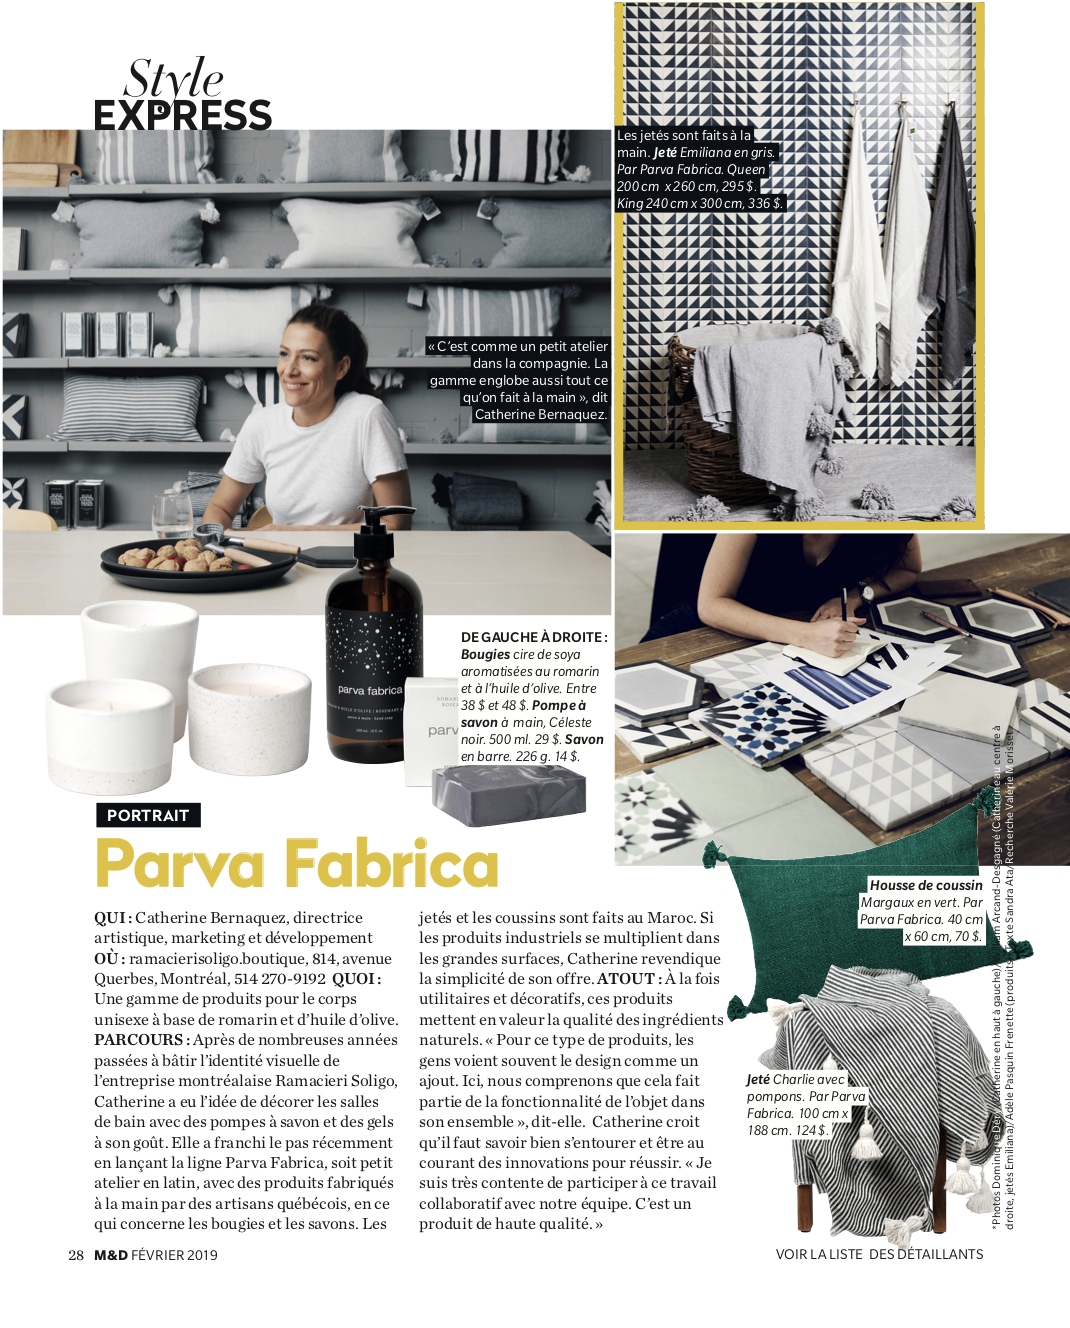 03_Artist Profile Parva Fabrica Montreal Quebec Design Canada Magazine Editor Valerie Morisset .png